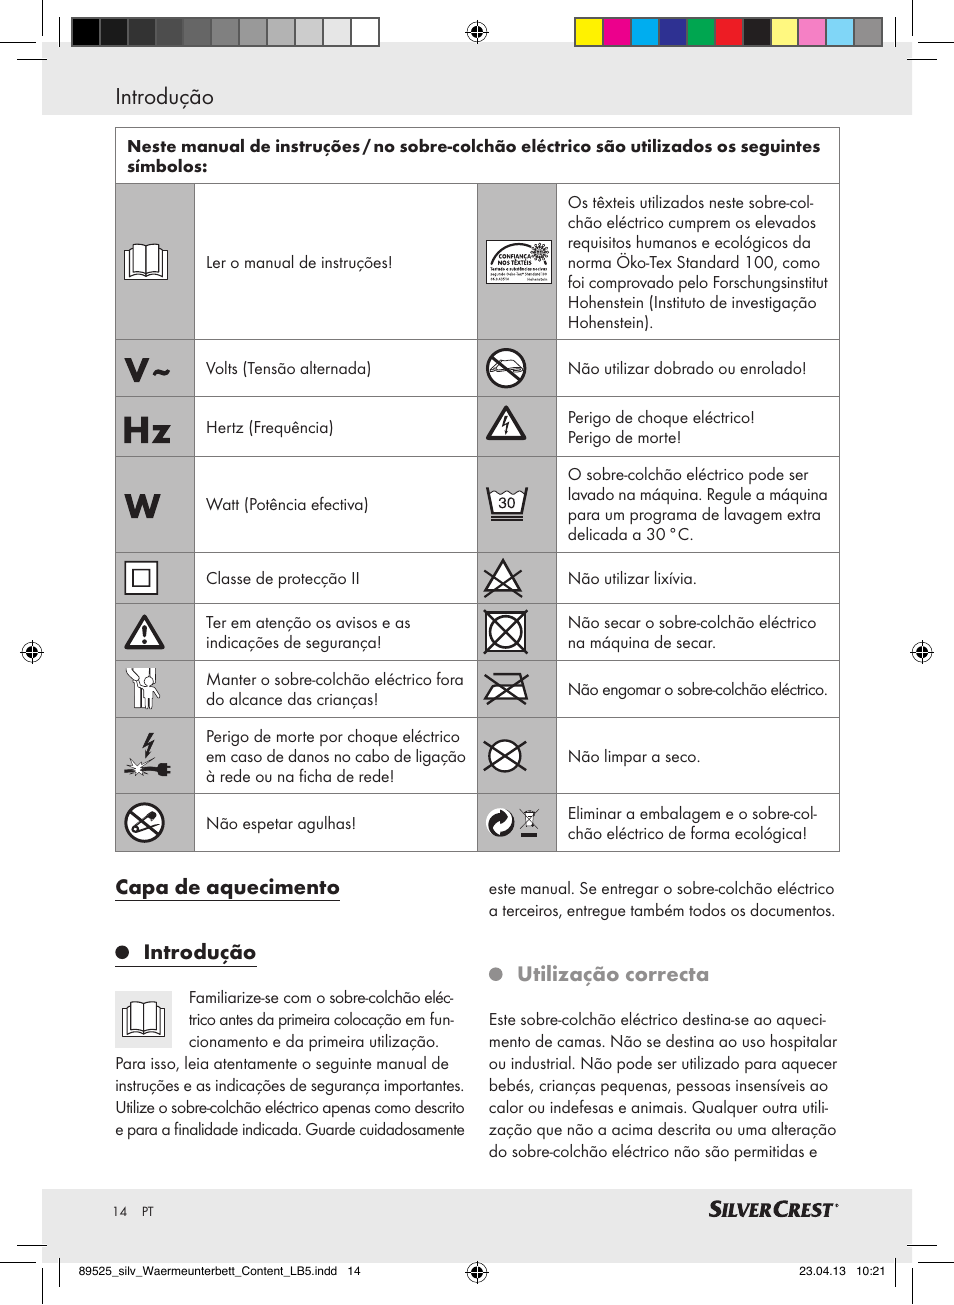 Introdução, Capa de aquecimento introdução, Utilização correcta |  Silvercrest SWUB 85 B2 User Manual | Page 14 / 37 | Original mode